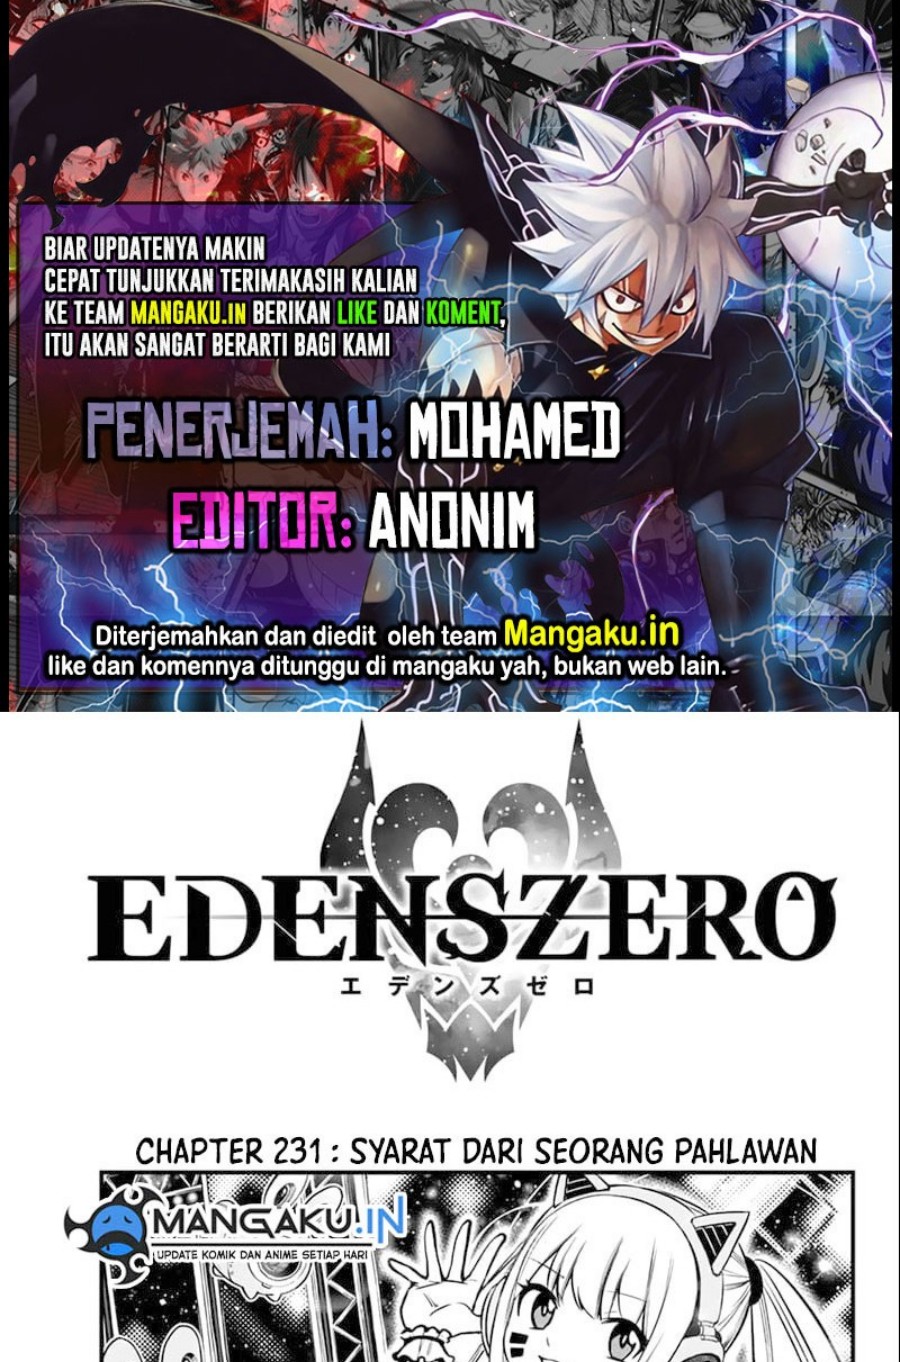 Eden’s Zero Chapter 231